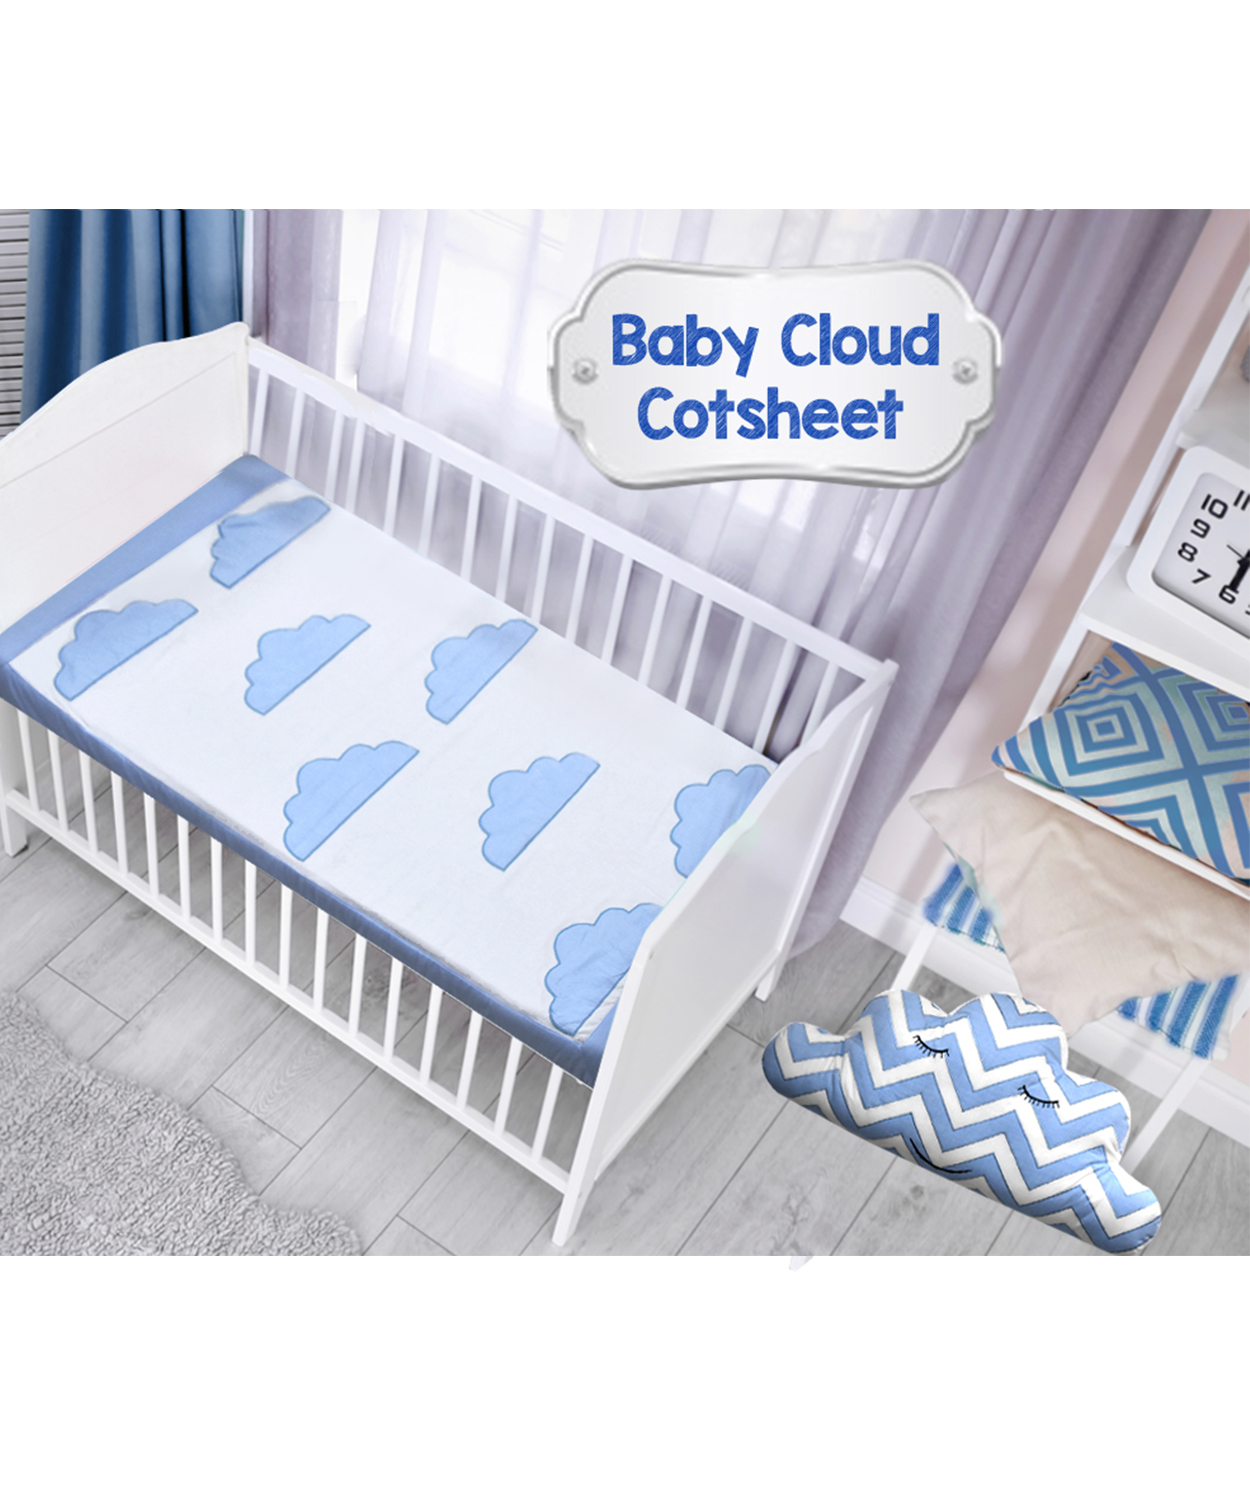 Baby Cloud Cotsheet